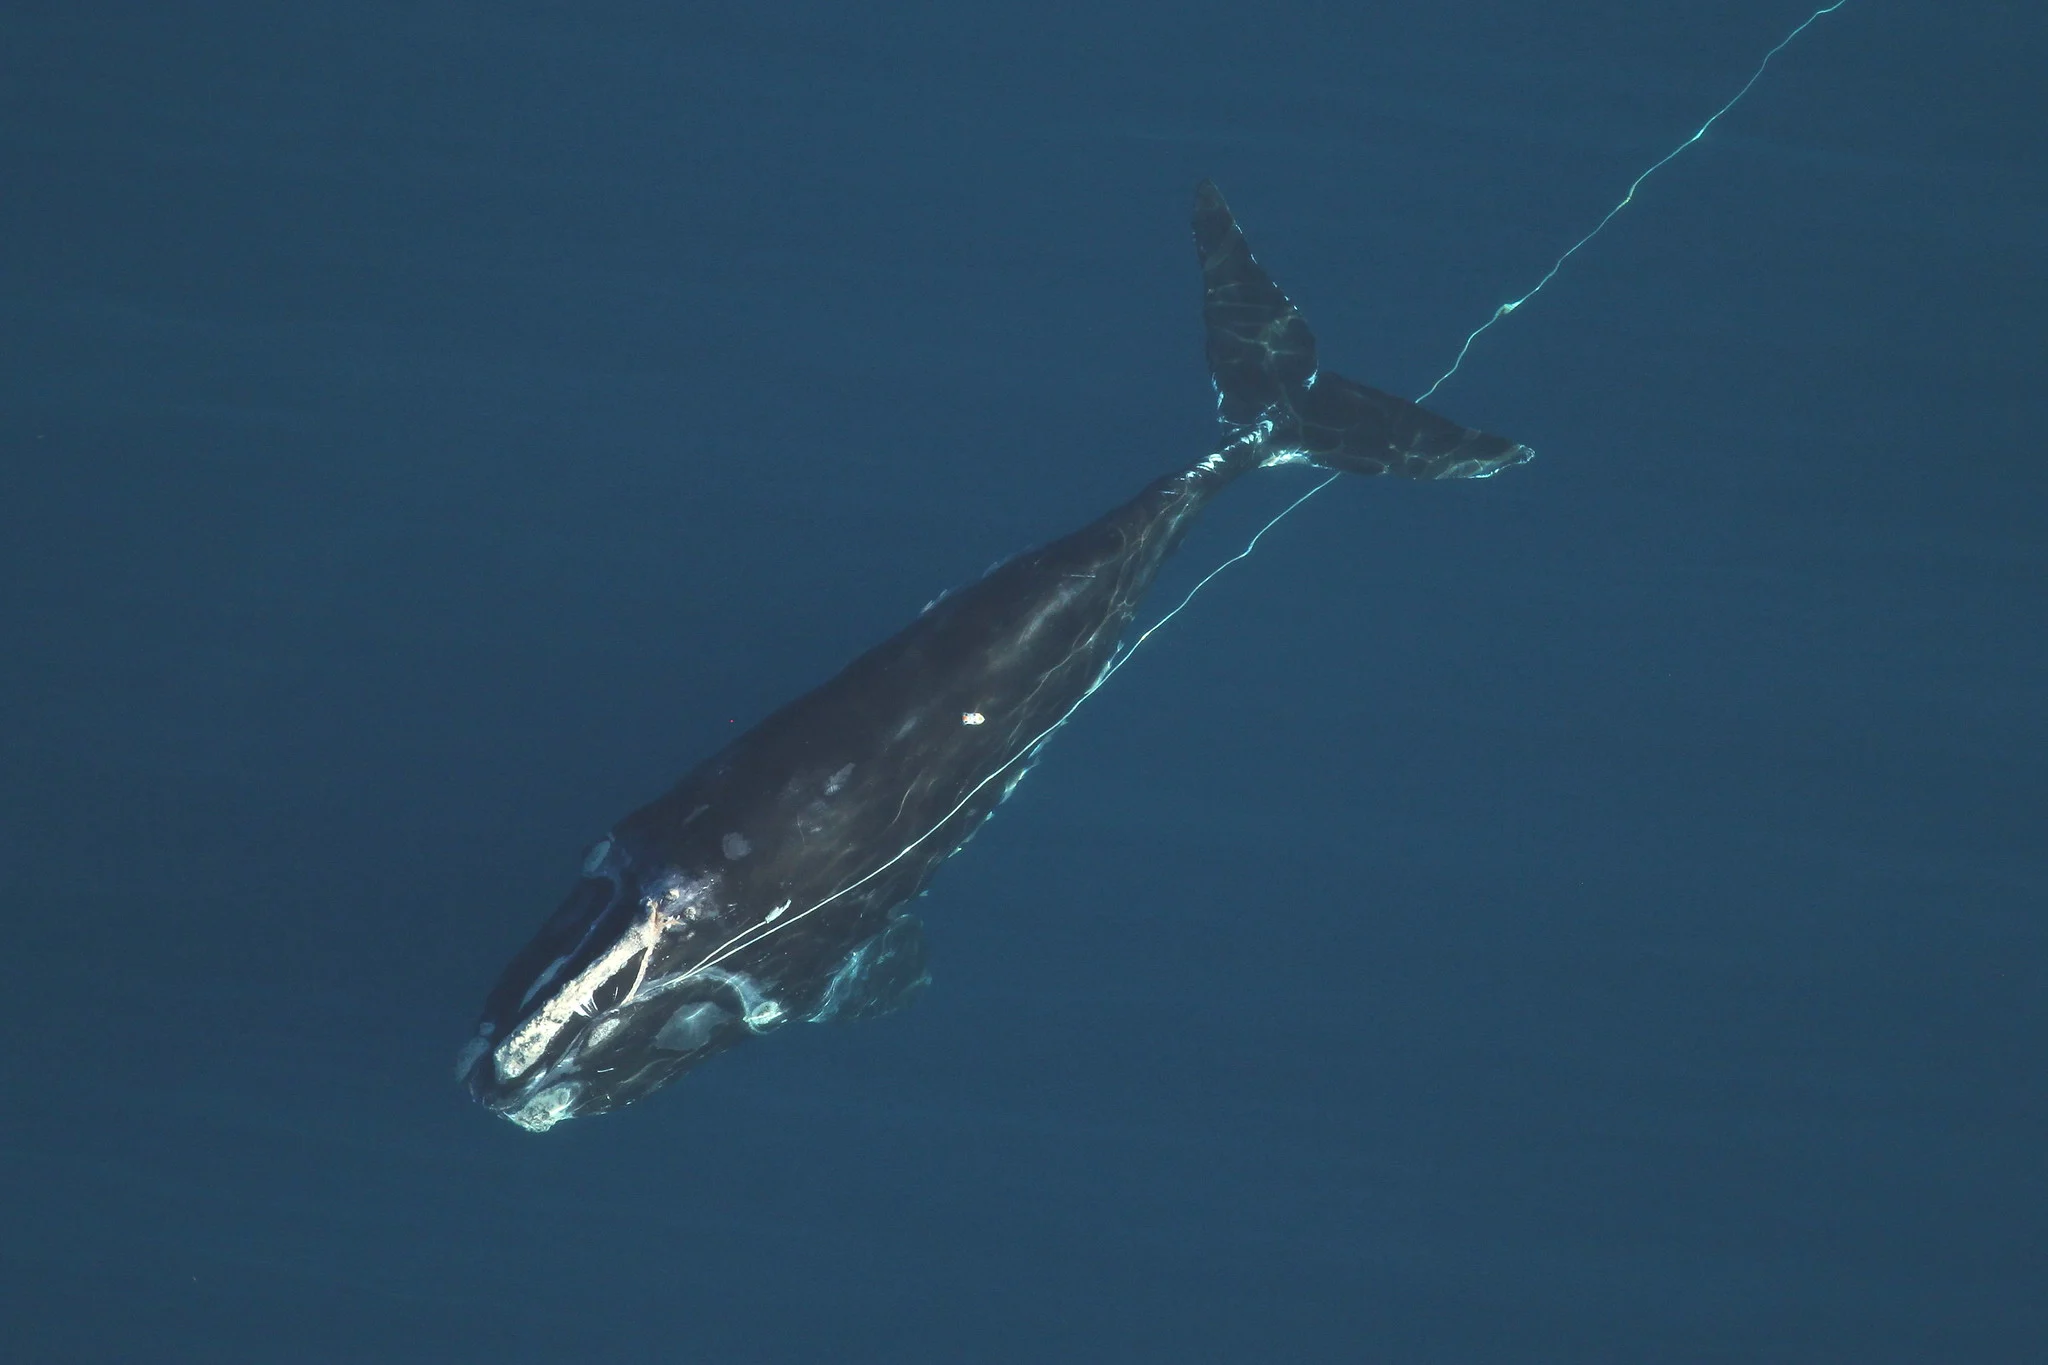 <p>Baleia-franca presa em uma linha de pesca na costa da Flórida, nos Estados Unidos. Esse tipo de enrosco pode ferir ou até matar baleias e outros mamíferos marinhos (Imagem: <a href="https://www.flickr.com/photos/myfwc/12683617055/in/gallery-144603962@N07-72157716644590747/">Comissão de Conservação de Peixes e da Vida Selvagem da Flórida</a>, obtida sob licença da NOAA / <a href="https://www.flickr.com/people/myfwc/">Flickr</a>, <a href="https://creativecommons.org/licenses/by-nc-nd/2.0/">CC BY NC ND</a>)</p>